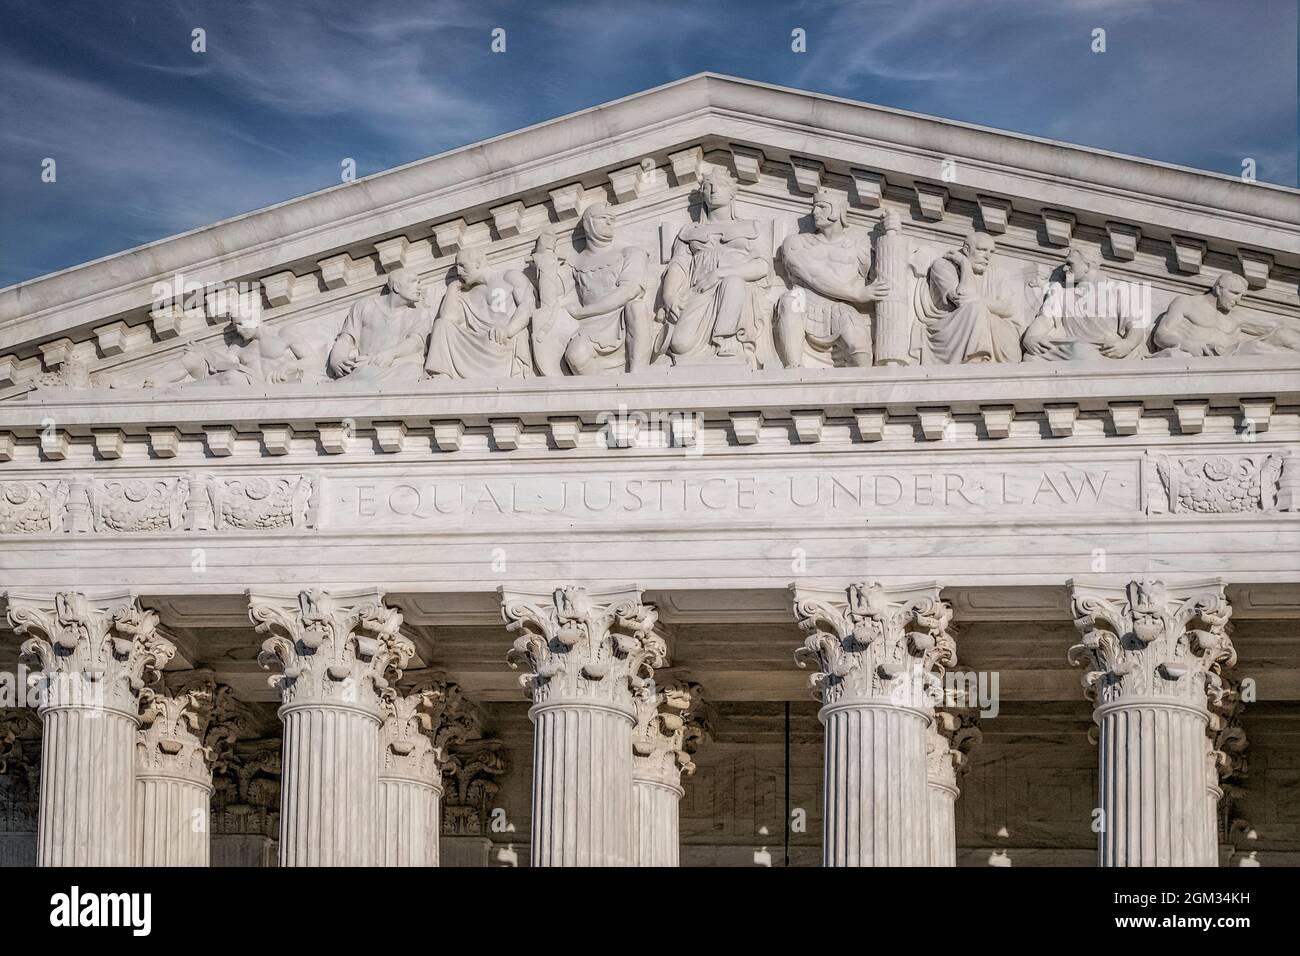 SCOTUS EQUAL Justice DC - Corte Suprema degli Stati Uniti a Washington DC. La più alta corte federale degli Stati Uniti con il suo ar neoclassico Foto Stock